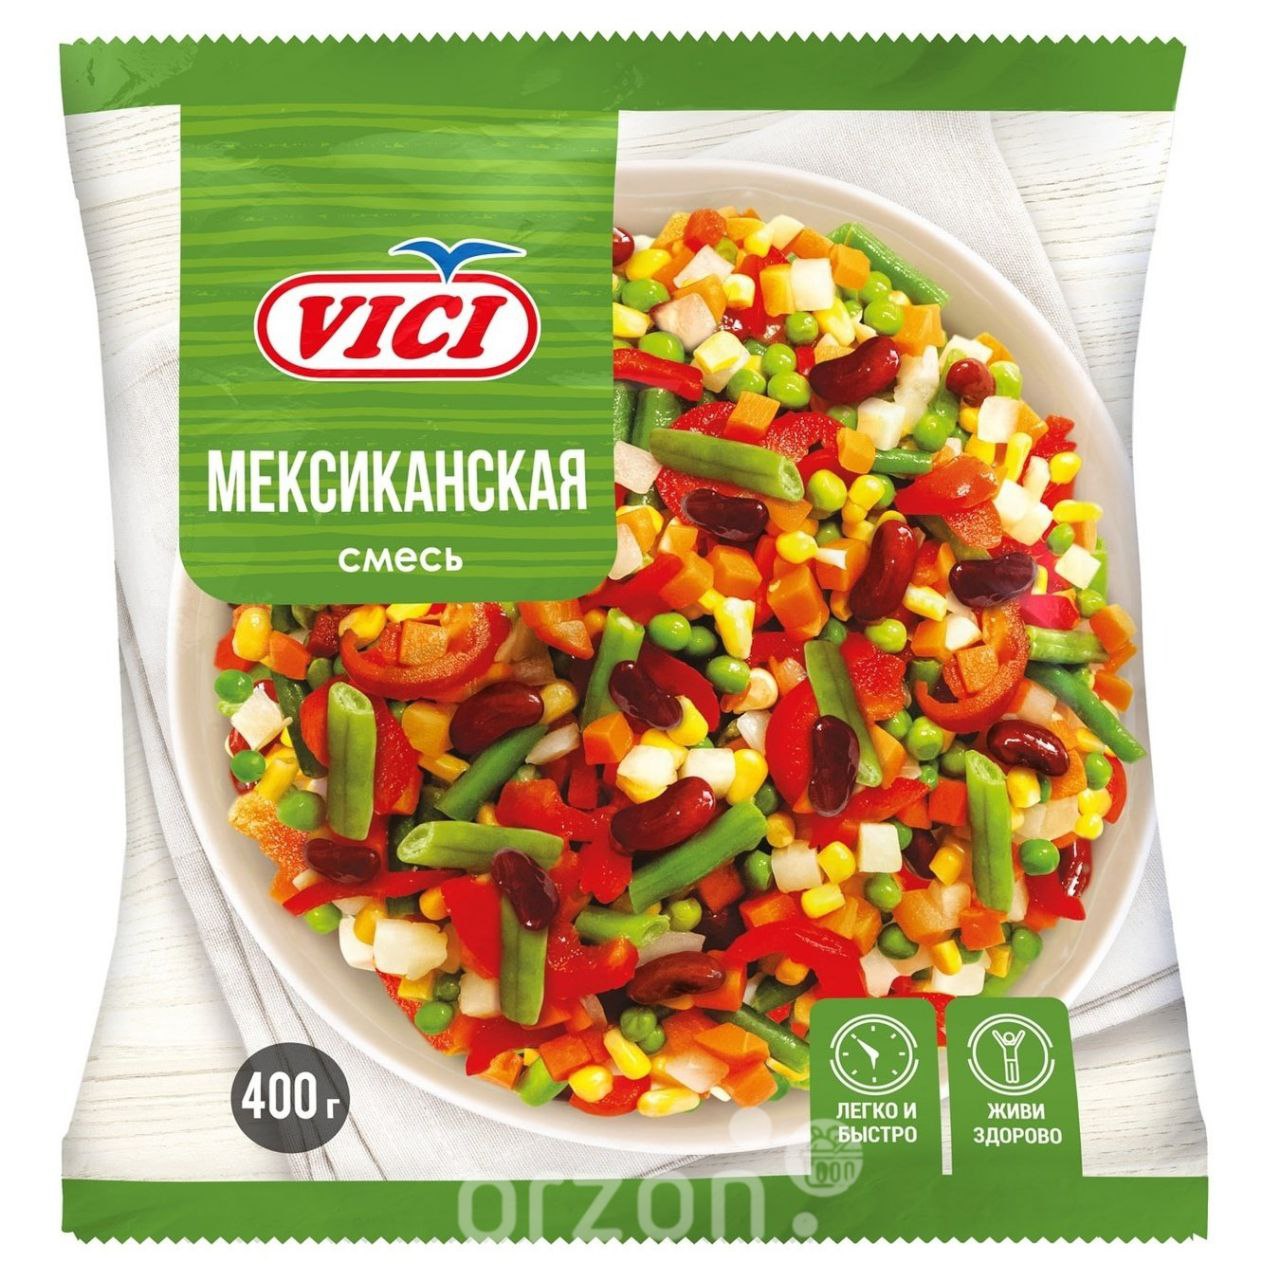 Овощная смесь "Vici" Мексиканская 400 гр